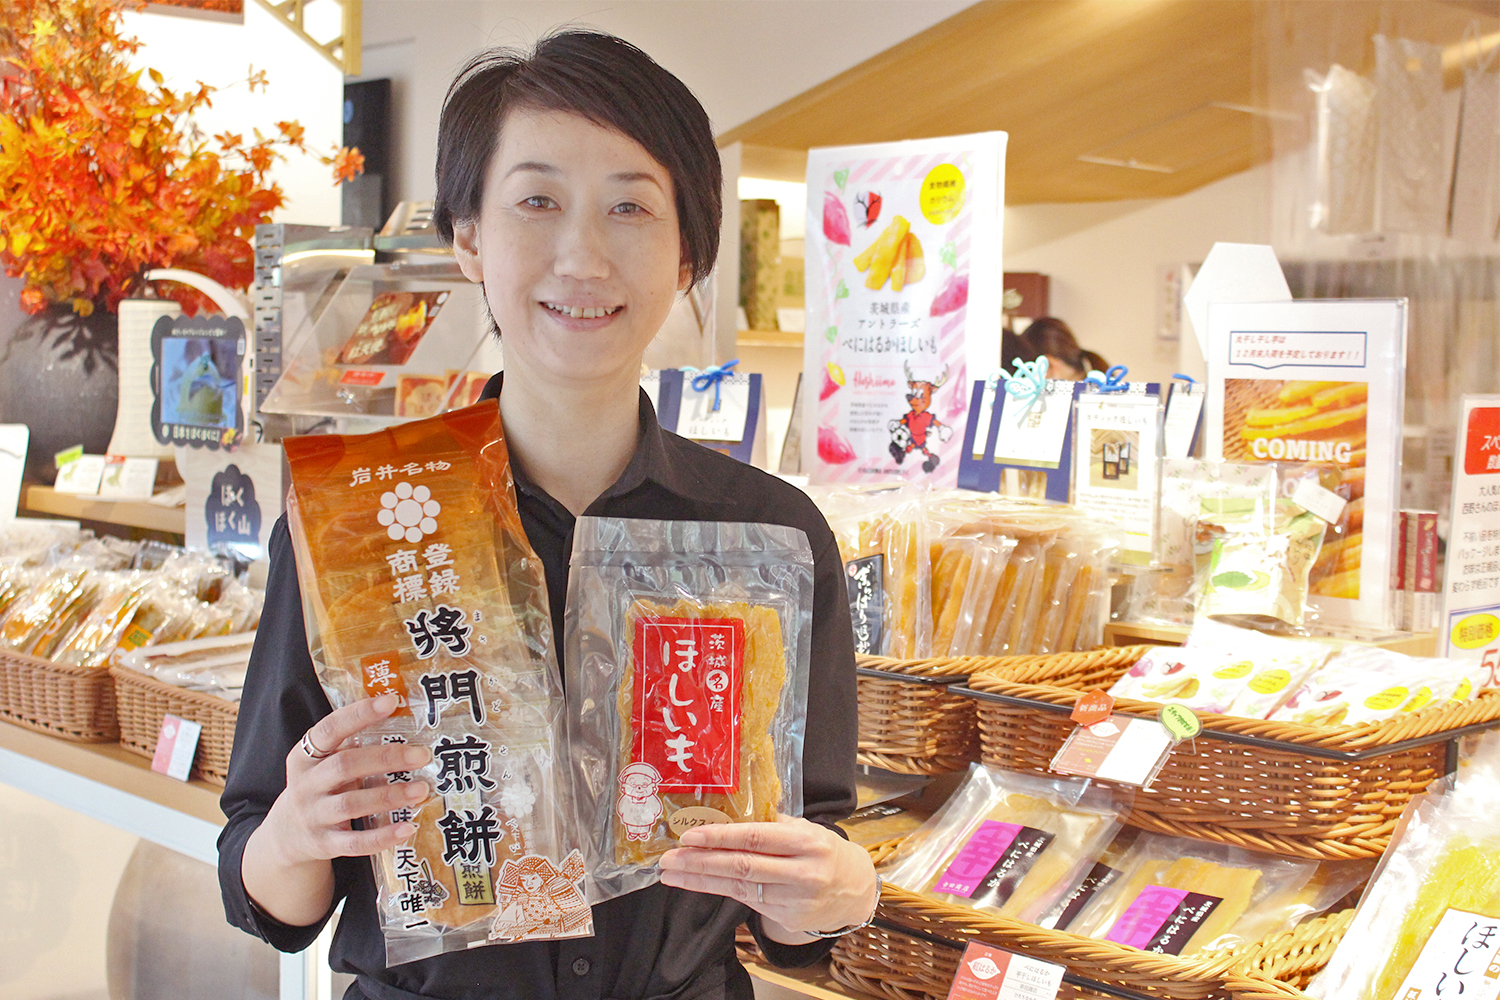 店長の宮崎さんが手に持っているのは、イチオシアイテムの将門煎餅と干し芋。